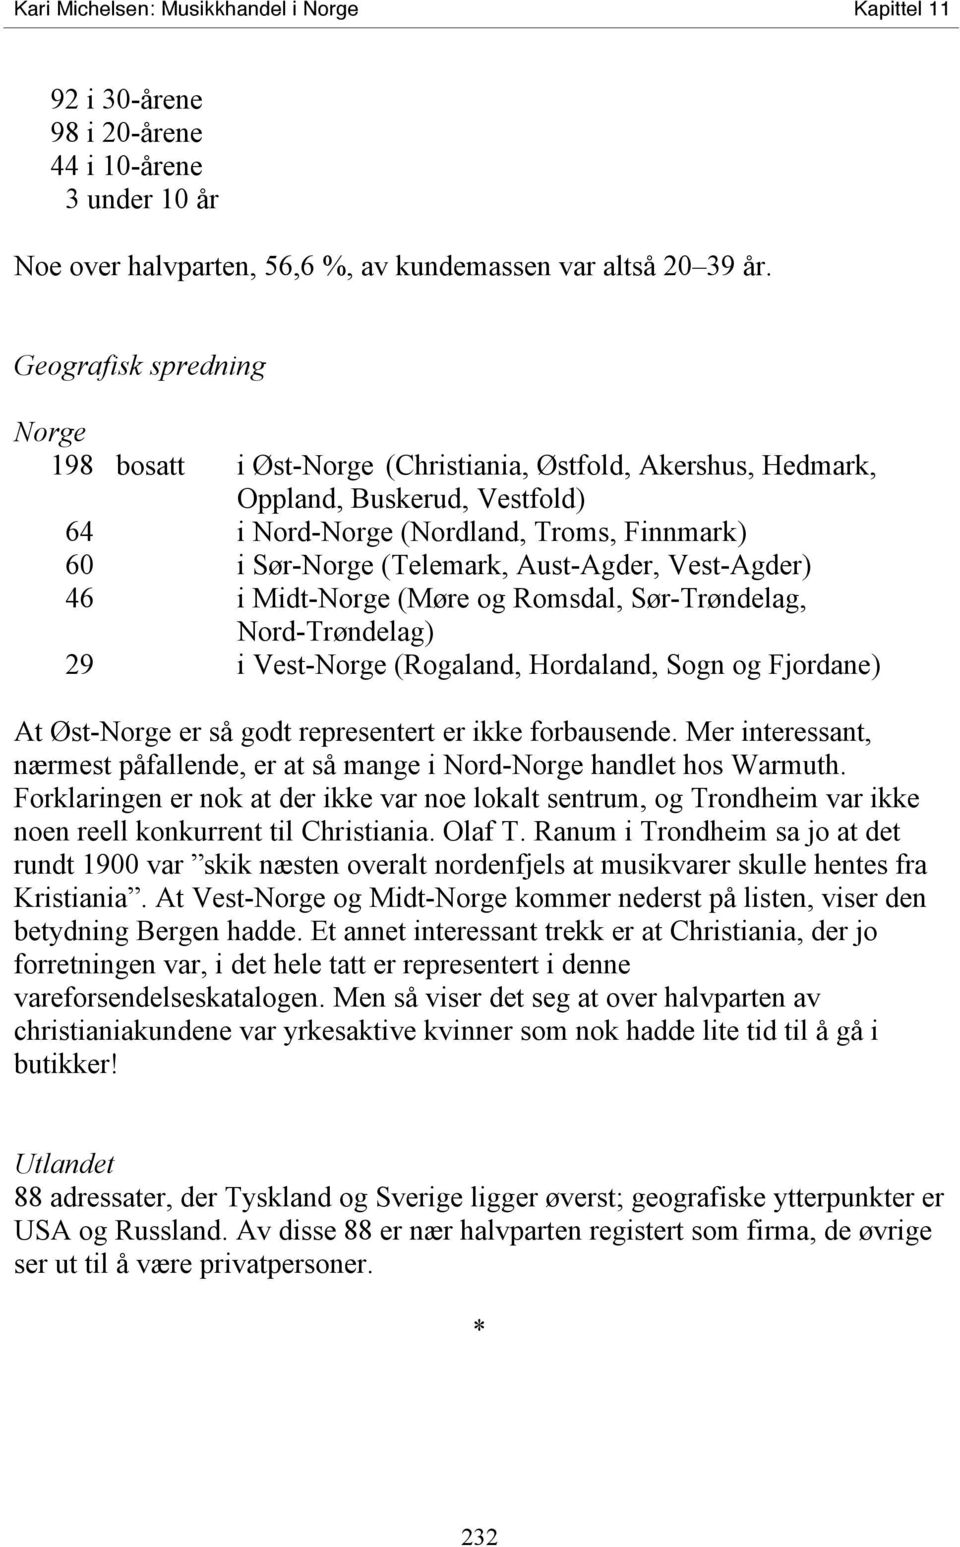 Aust-Agder, Vest-Agder) 46 i Midt-Norge (Møre og Romsdal, Sør-Trøndelag, Nord-Trøndelag) 29 i Vest-Norge (Rogaland, Hordaland, Sogn og Fjordane) At Øst-Norge er så godt representert er ikke